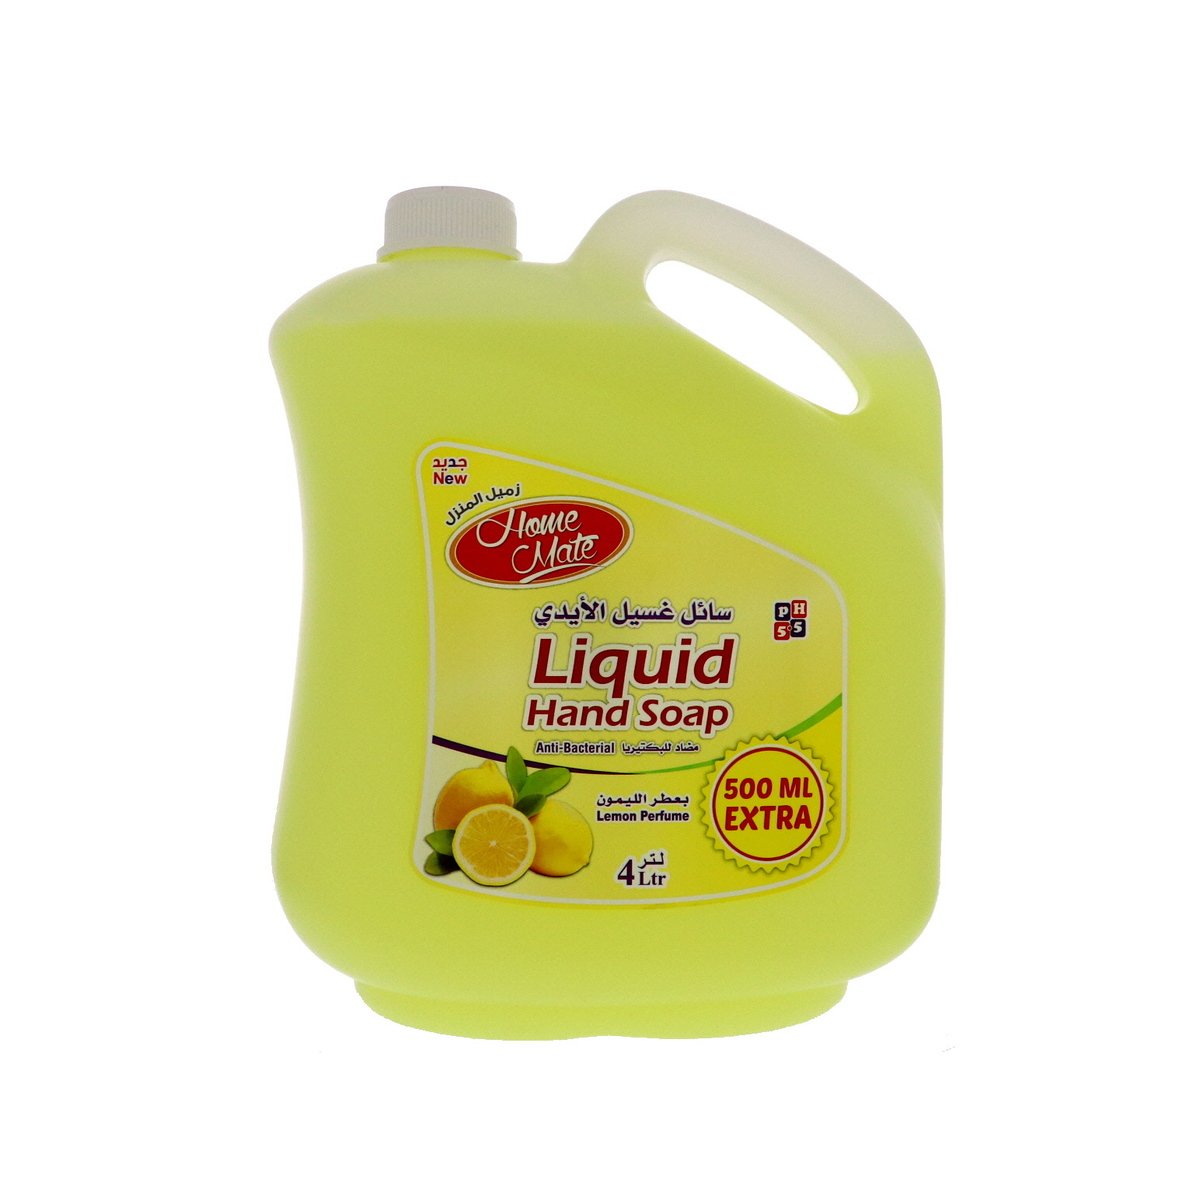 زميل المنزل سائل غسيل الايدي بعطر الليمون 4 لتر + 500 مل